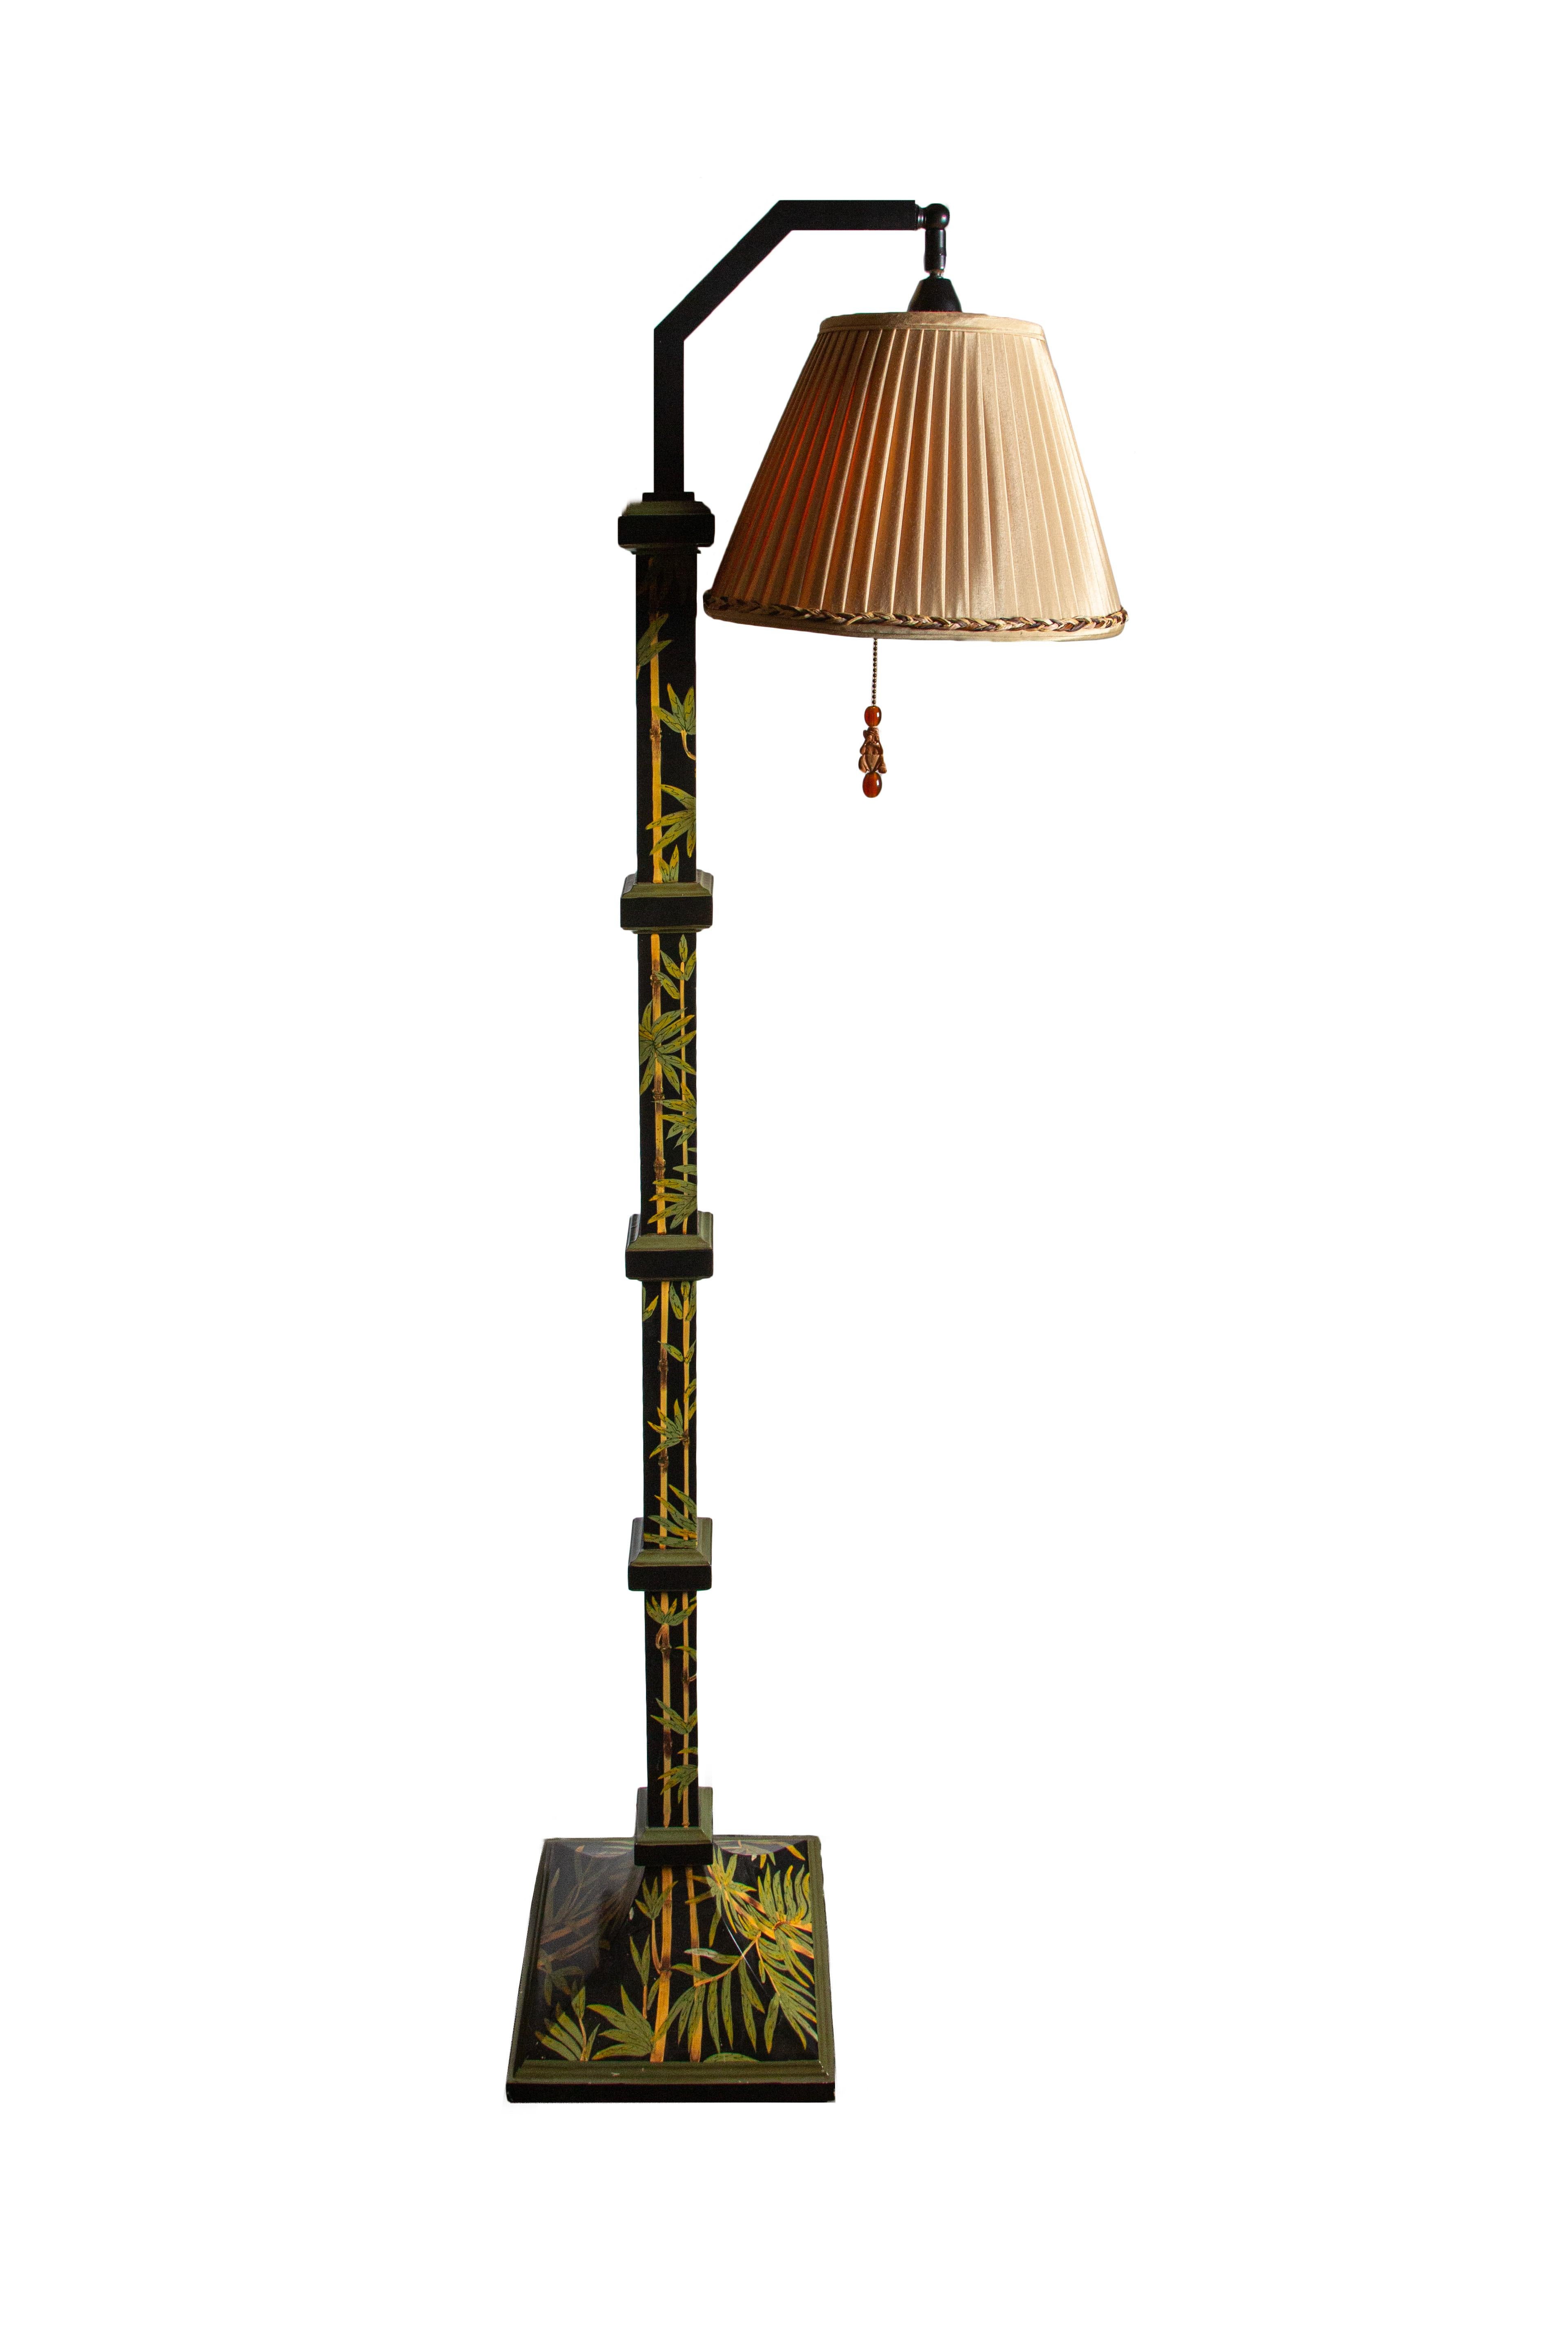 Lampadaire sur pied décoré en bambou avec abat-jour par Frederick Cooper :

En 1923, Frederick Cooper, un artiste de Chicago, a créé un studio pour réaliser de magnifiques sculptures et aquarelles. L'architecture américaine était à son apogée dans